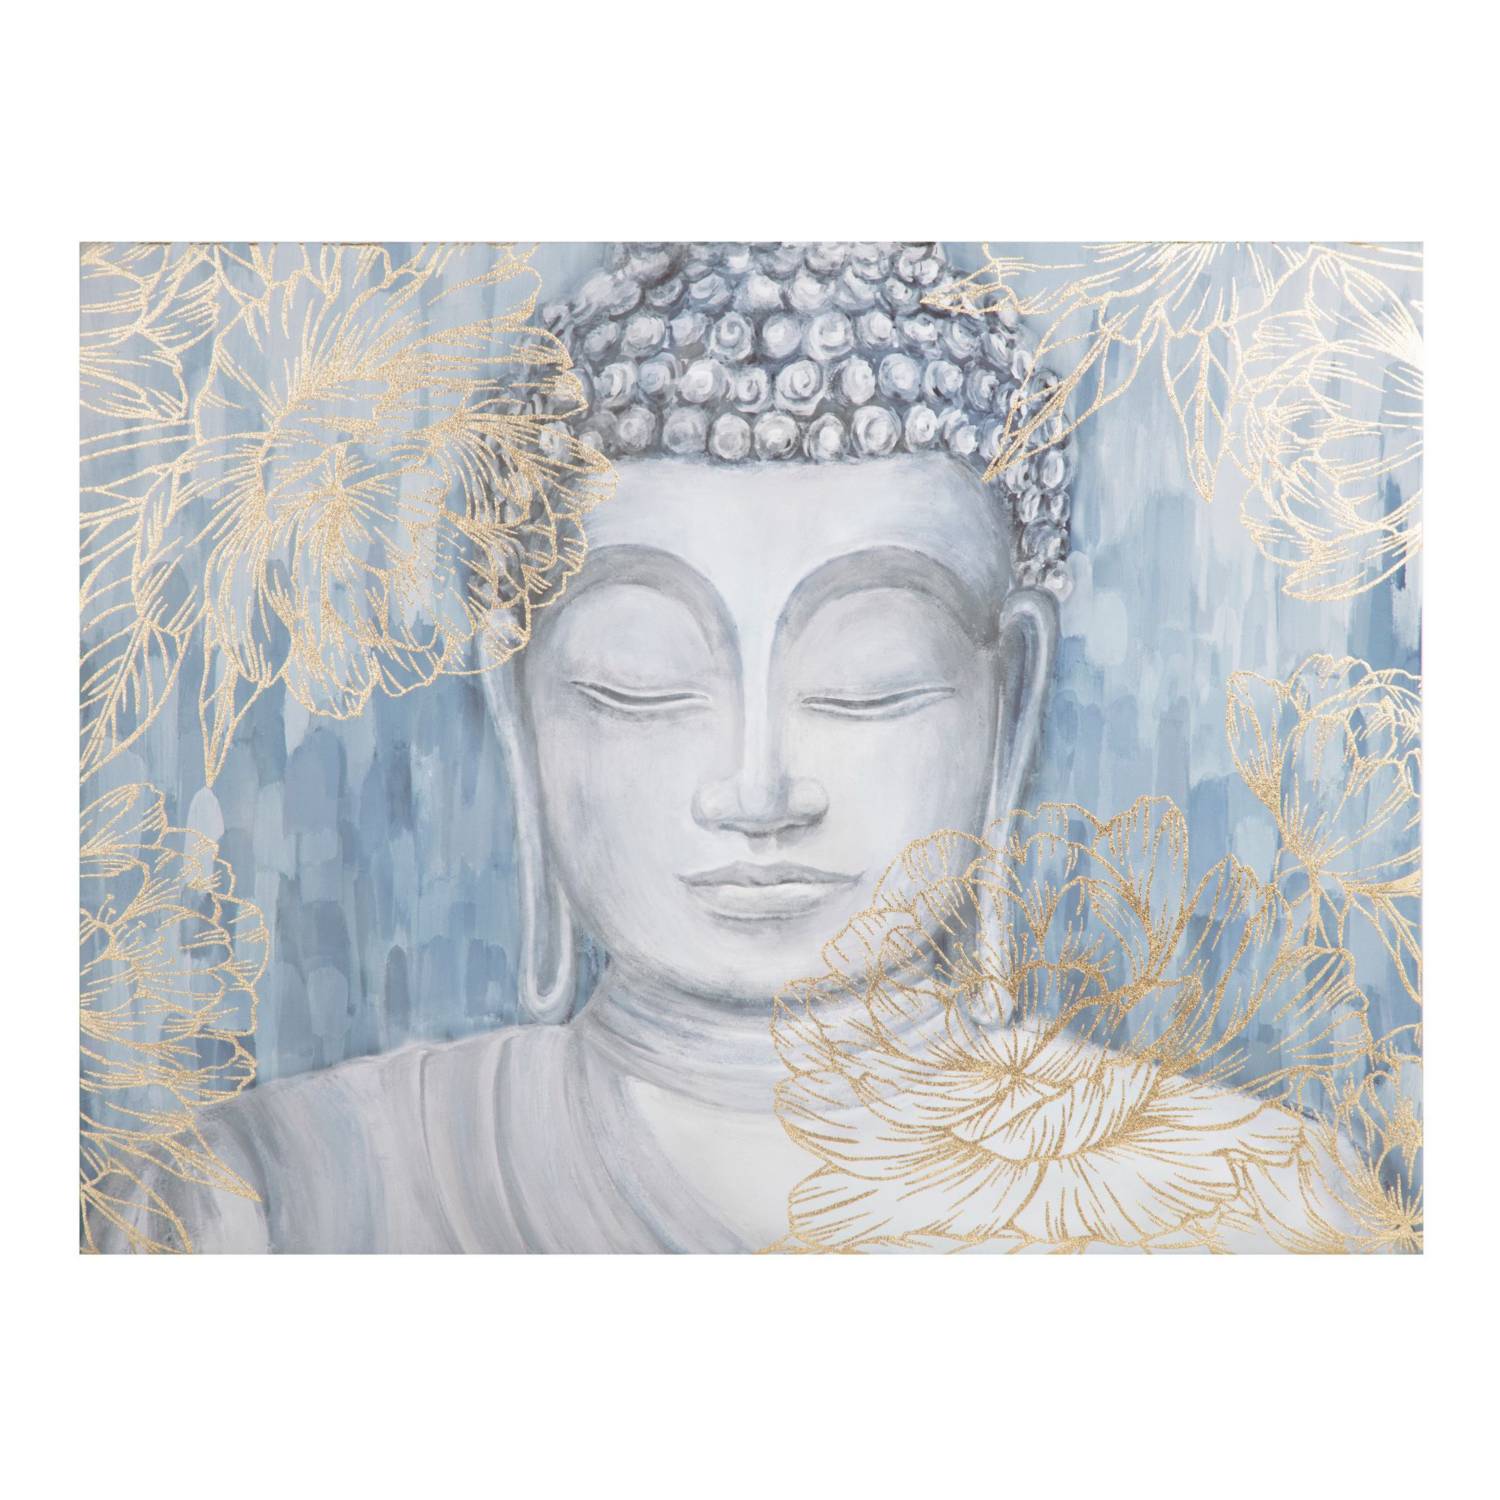 Cuadro Buda sonriente impreso en lienzo venta online